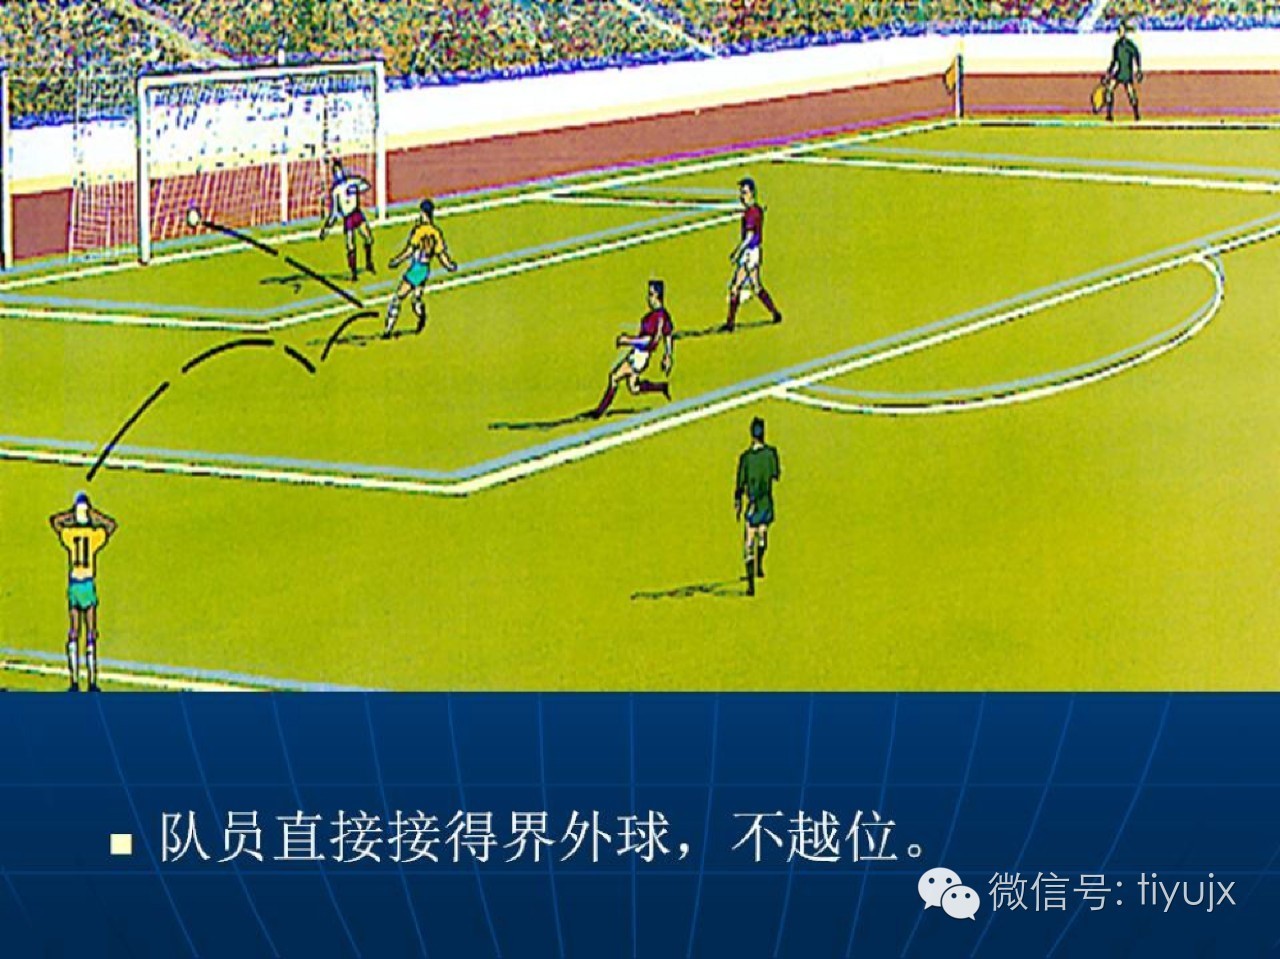 足球项目的起源到中国古代的球类游戏蹴鞠鞠